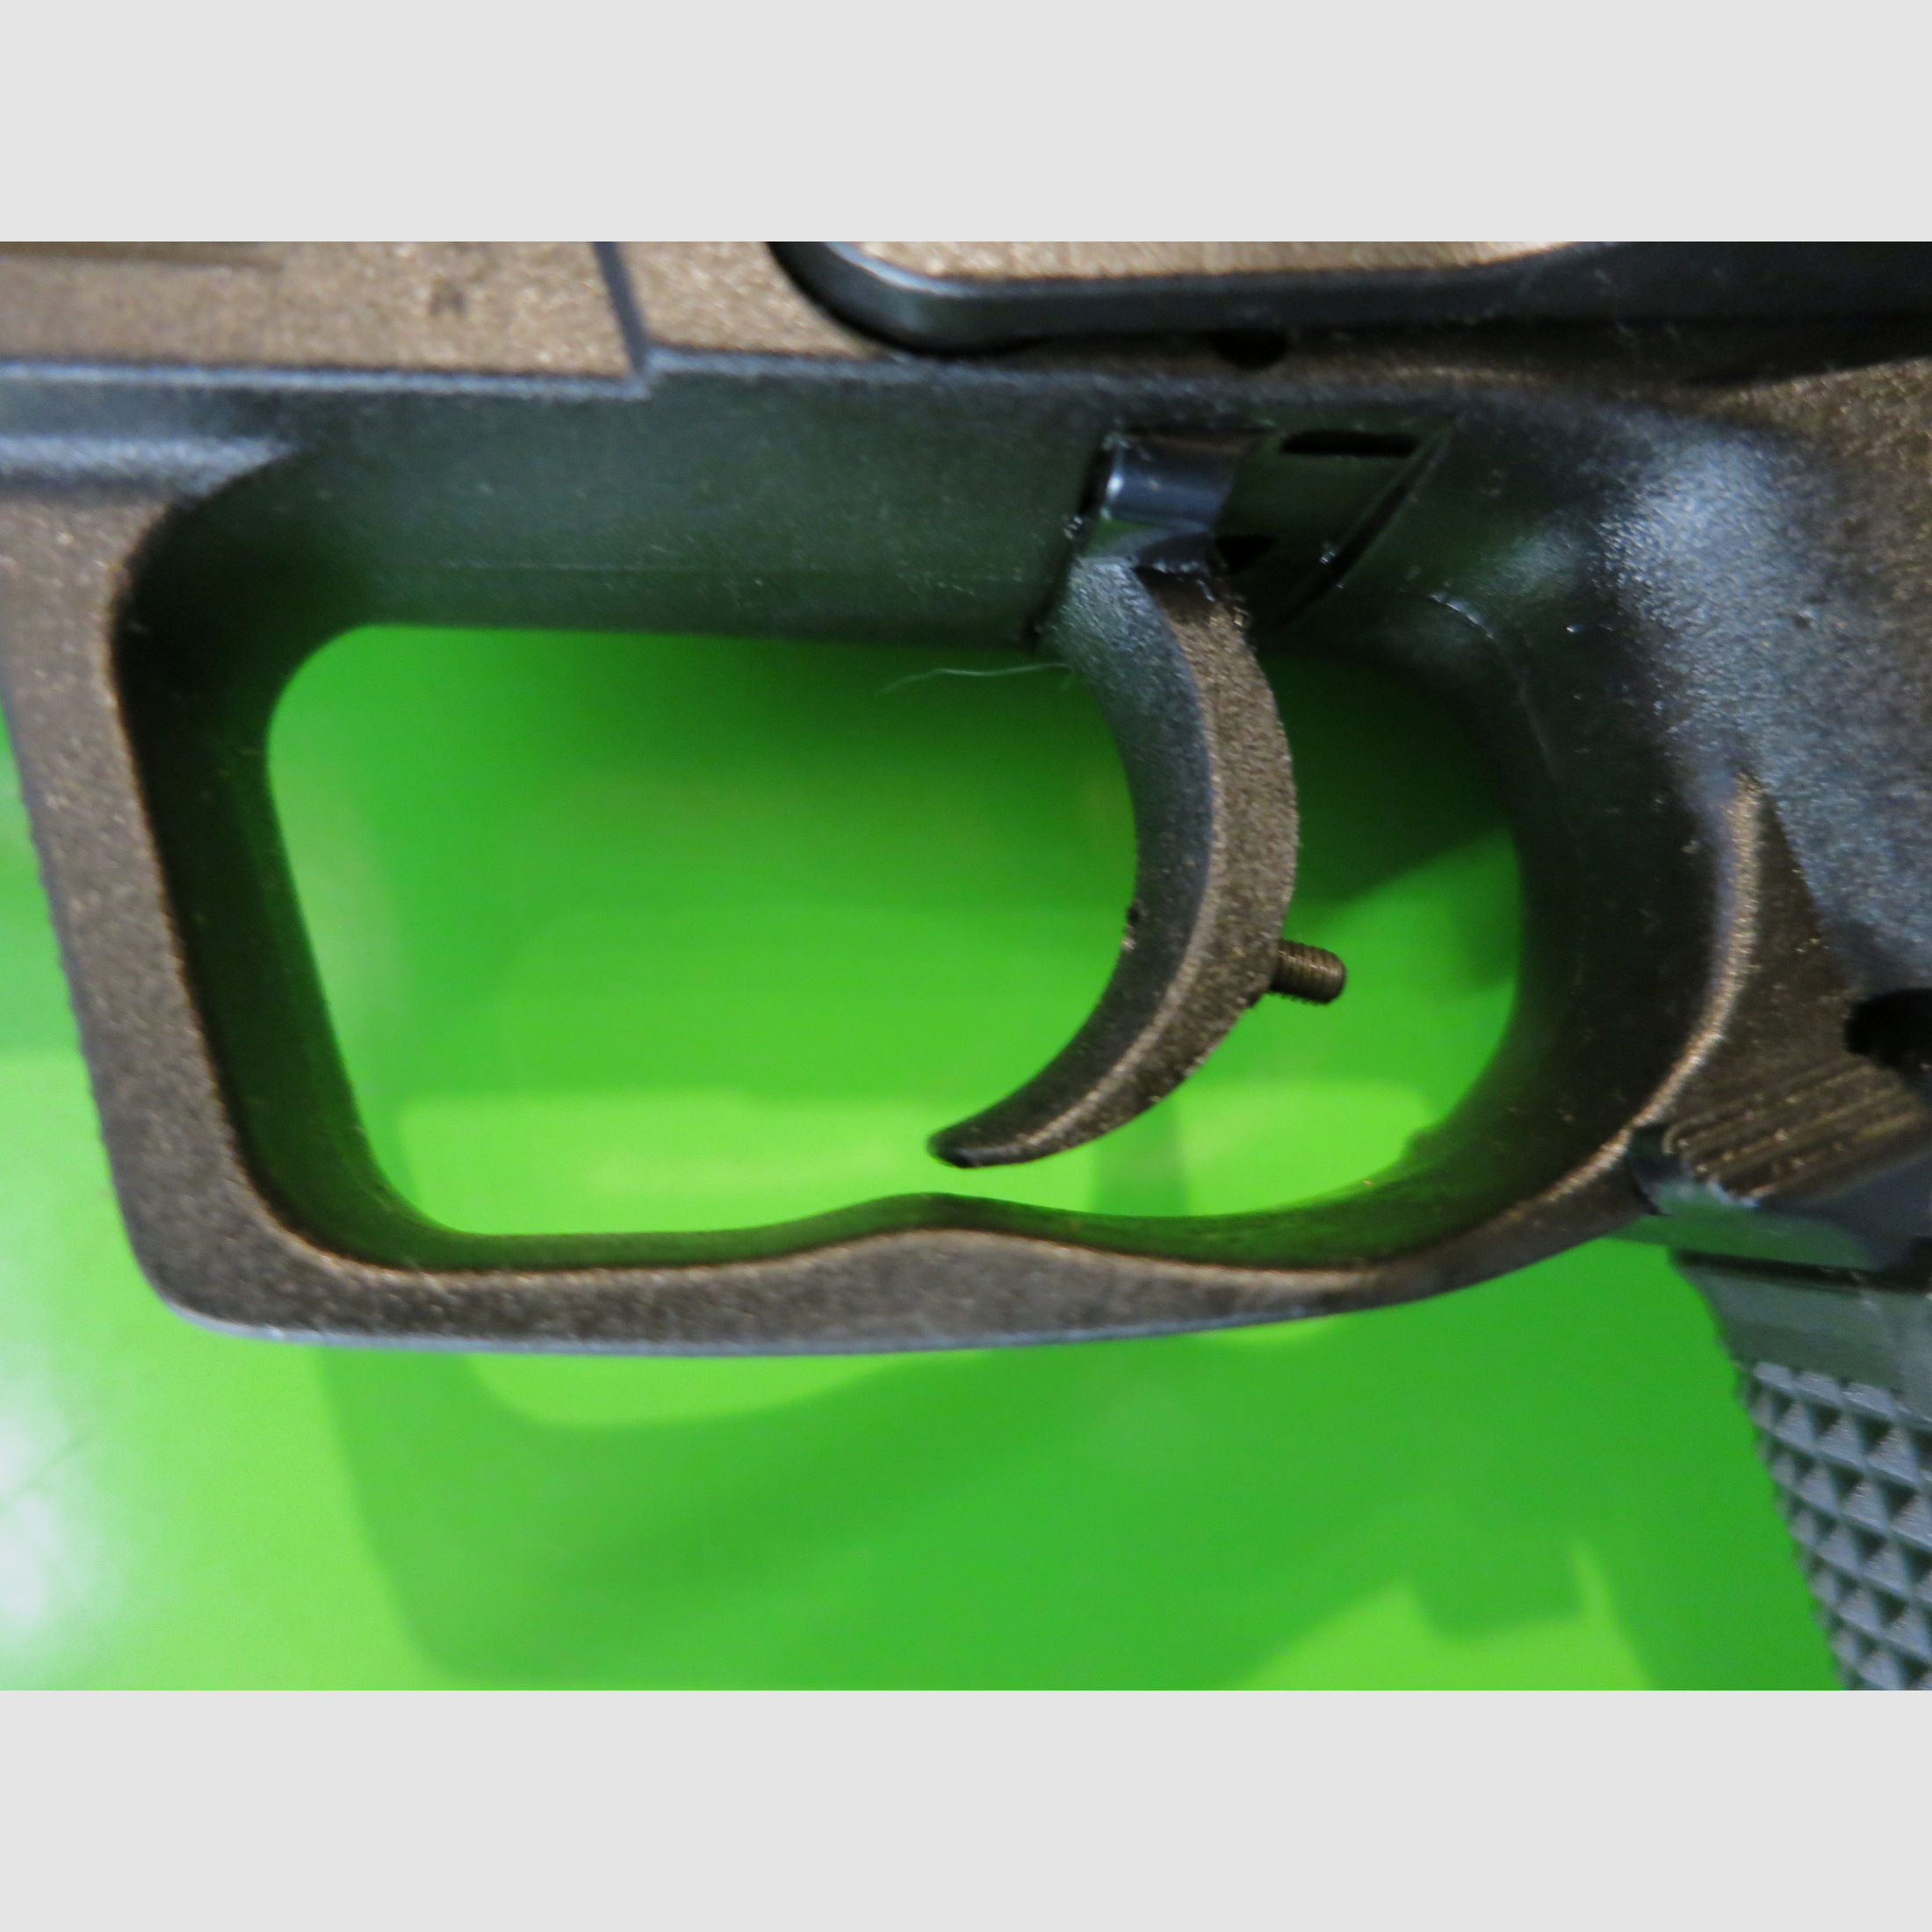 Heckler & Koch USP, 9 mm Luger, beste Technik für Jagd und Sport     #18